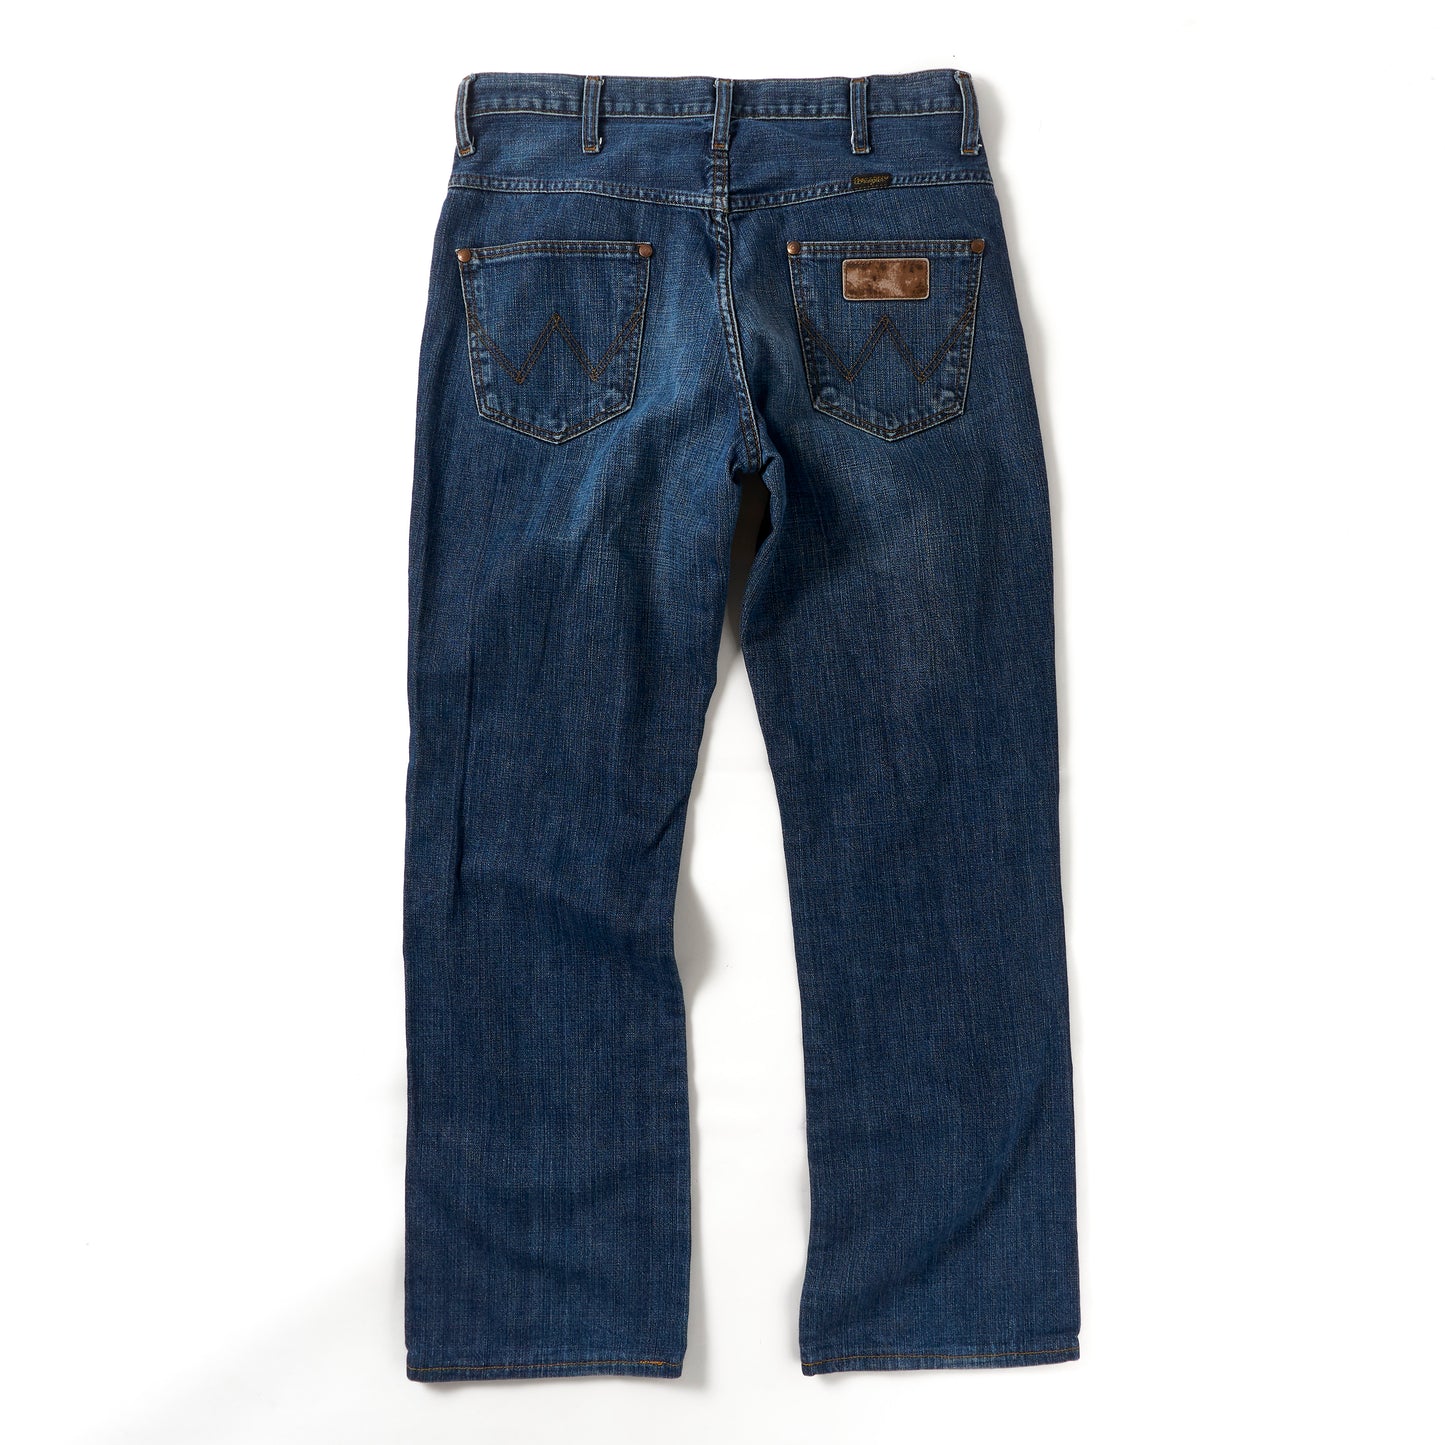 Vintage Wrangler Jeans